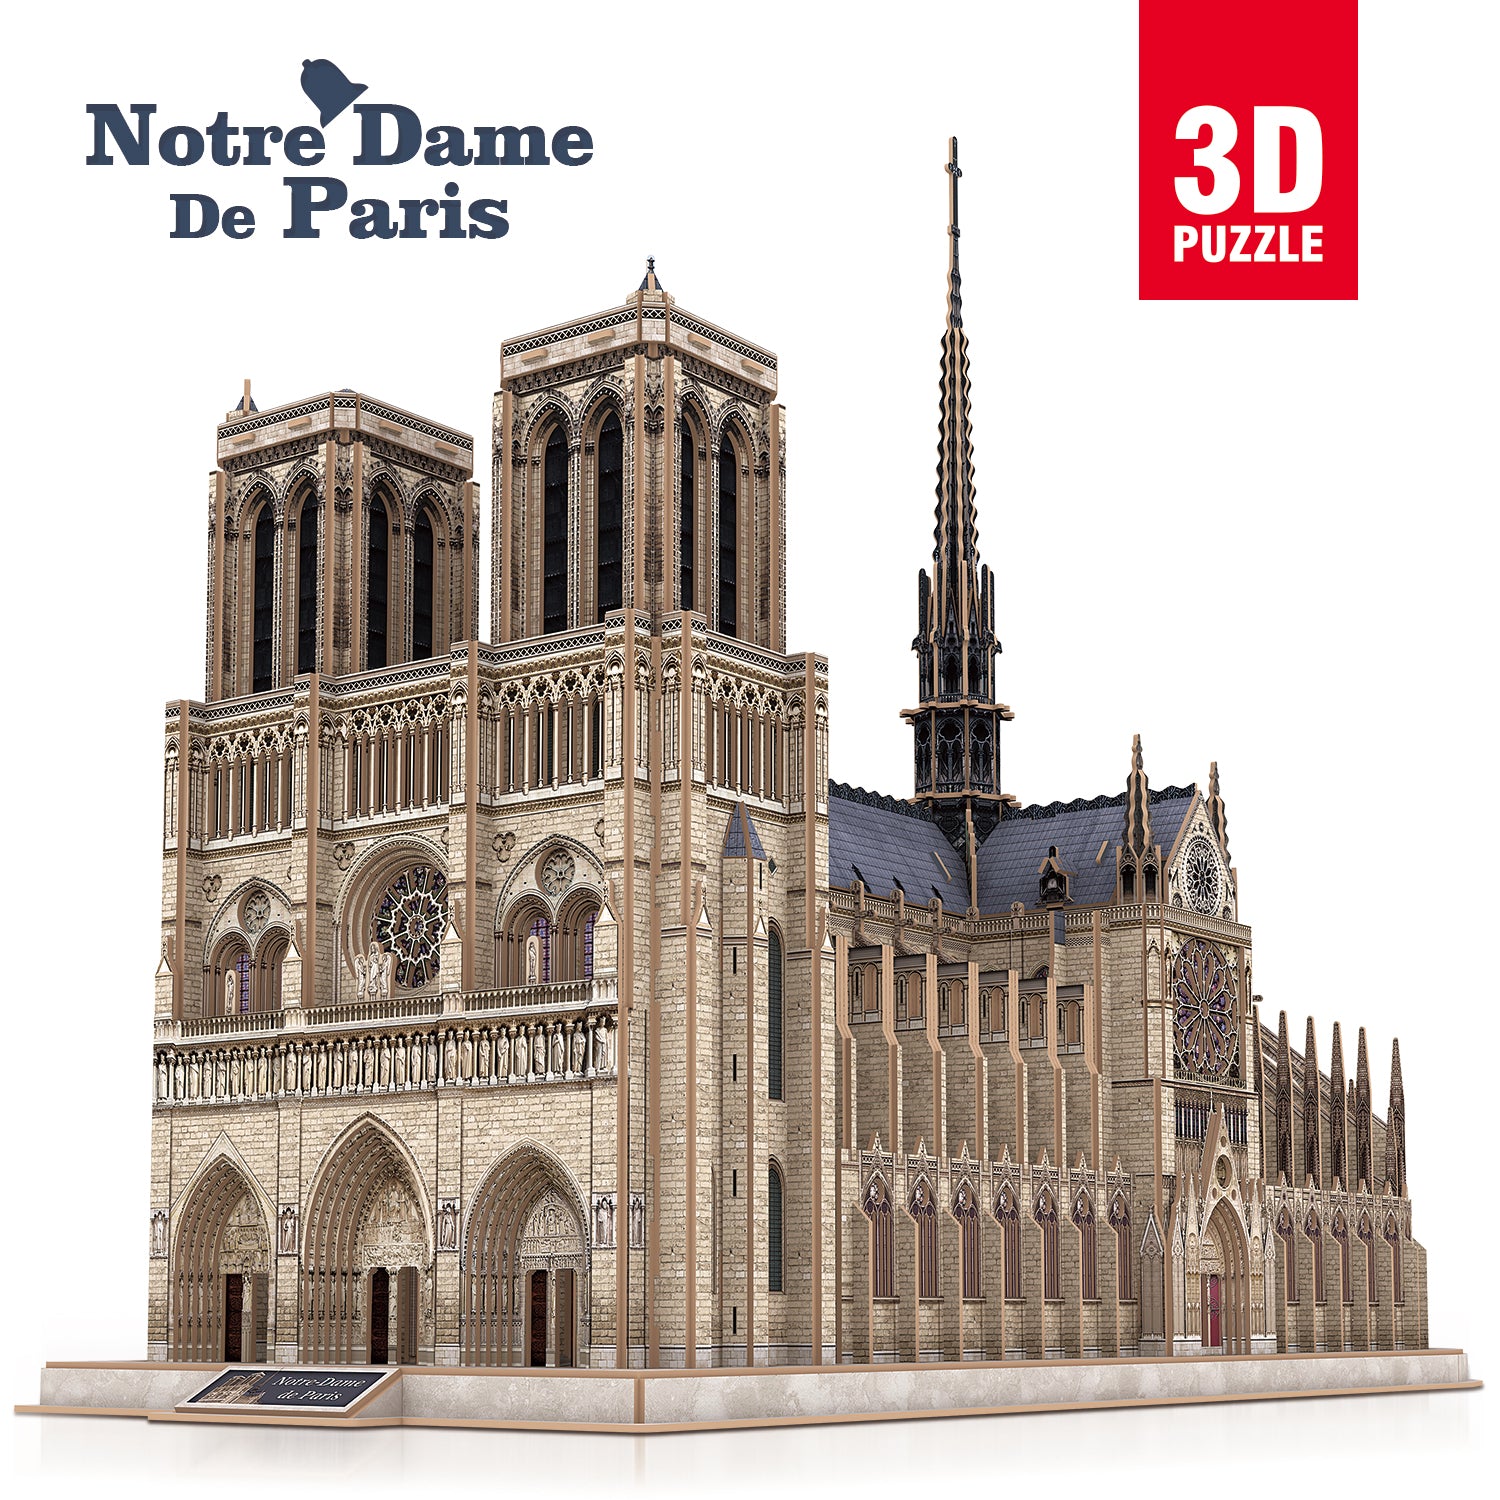 CubicFun Notre Dame De Paris Shaped 3D Puzzle 293 Pieces